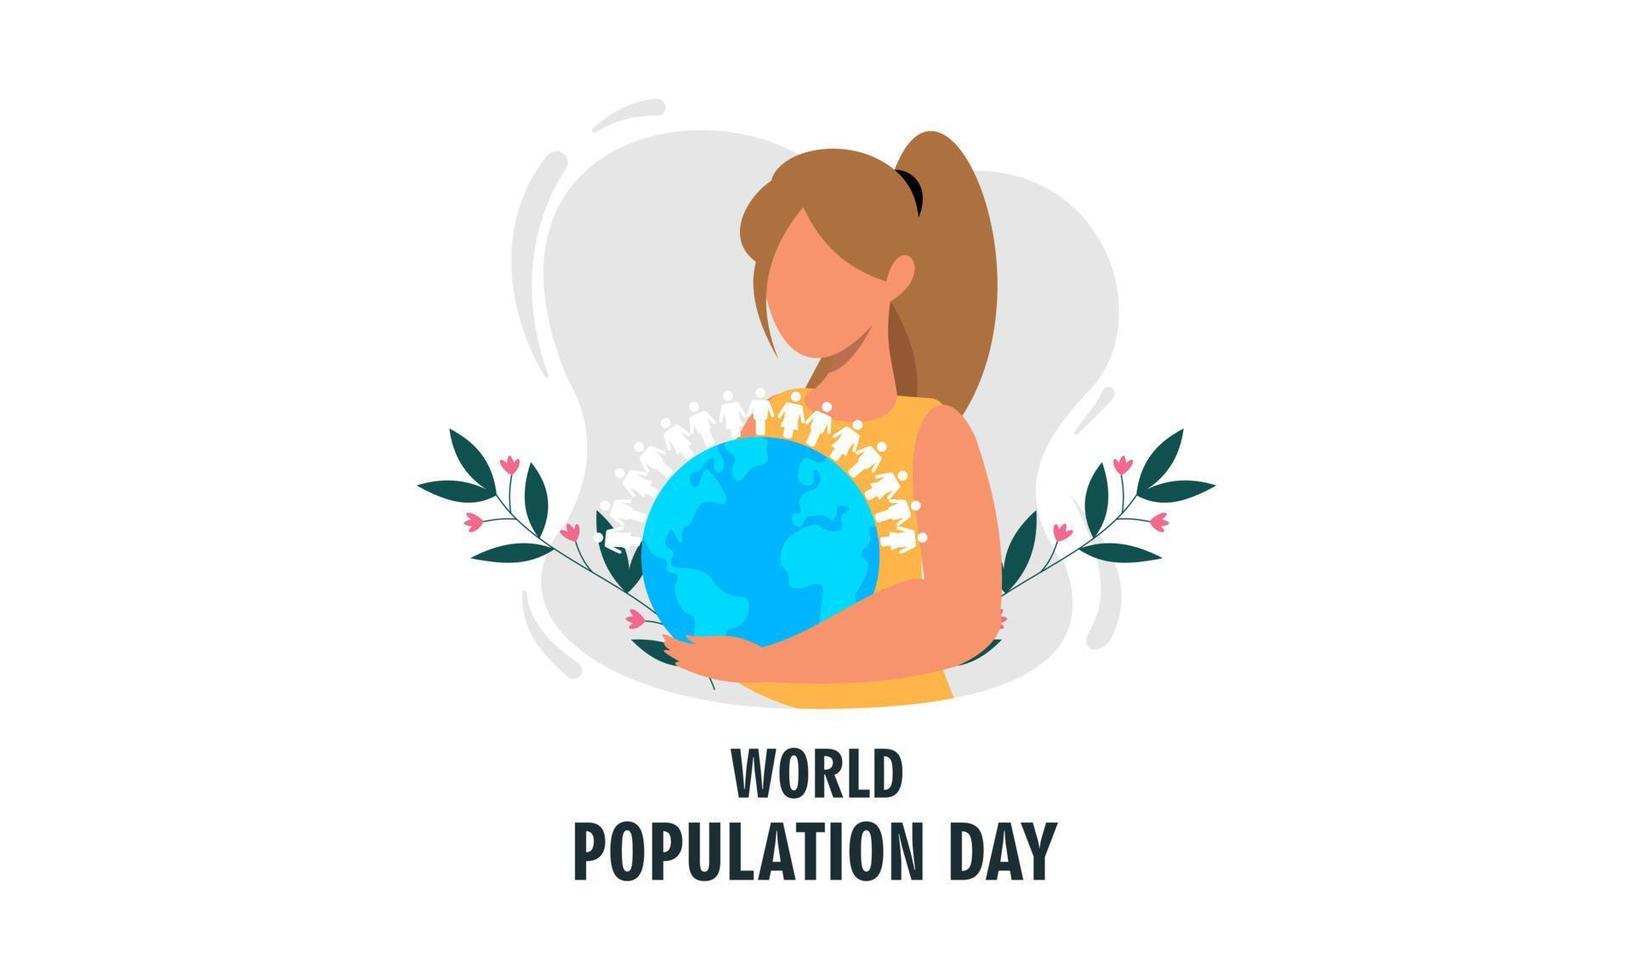 världens befolkningsdag illustration, affisch eller banderoll vektor